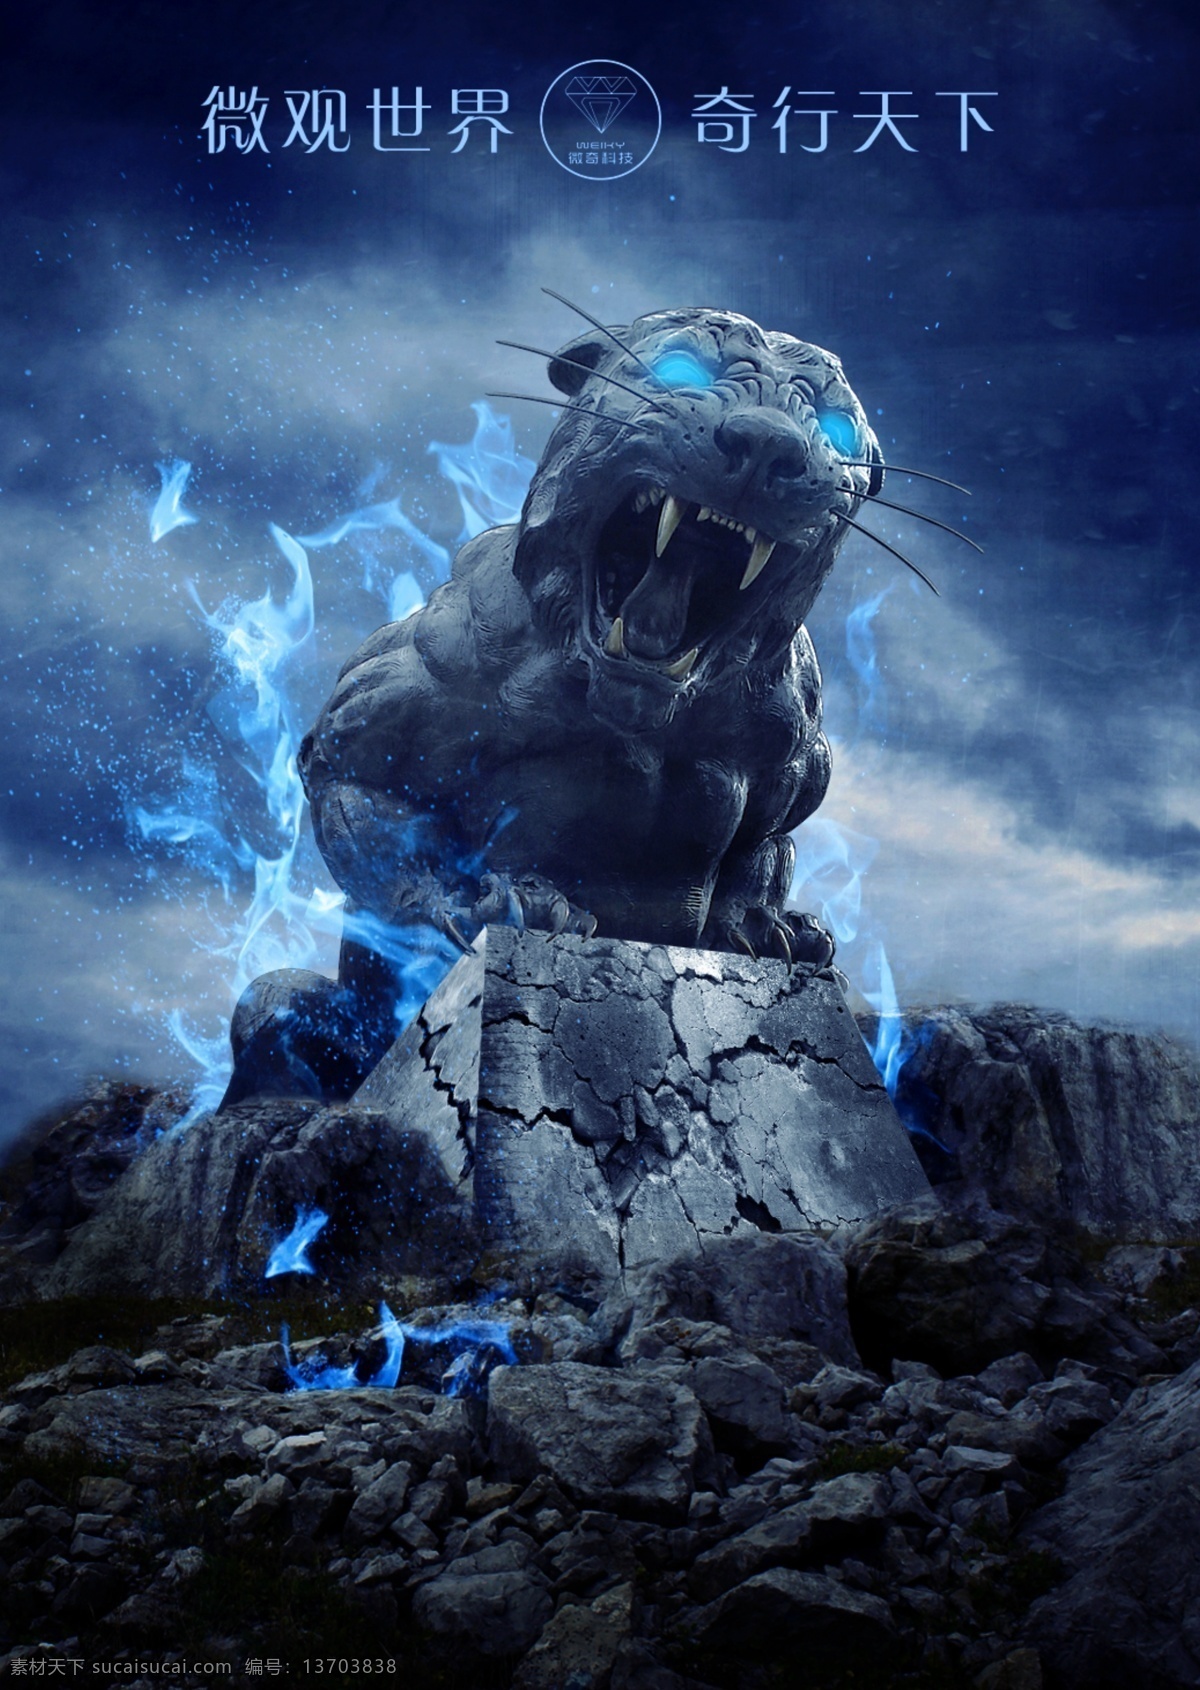 猛兽 创意 特效 海报 创意特效海报 石虎 科幻 蓝光 创意设计 天空 岩石 力量 狂野